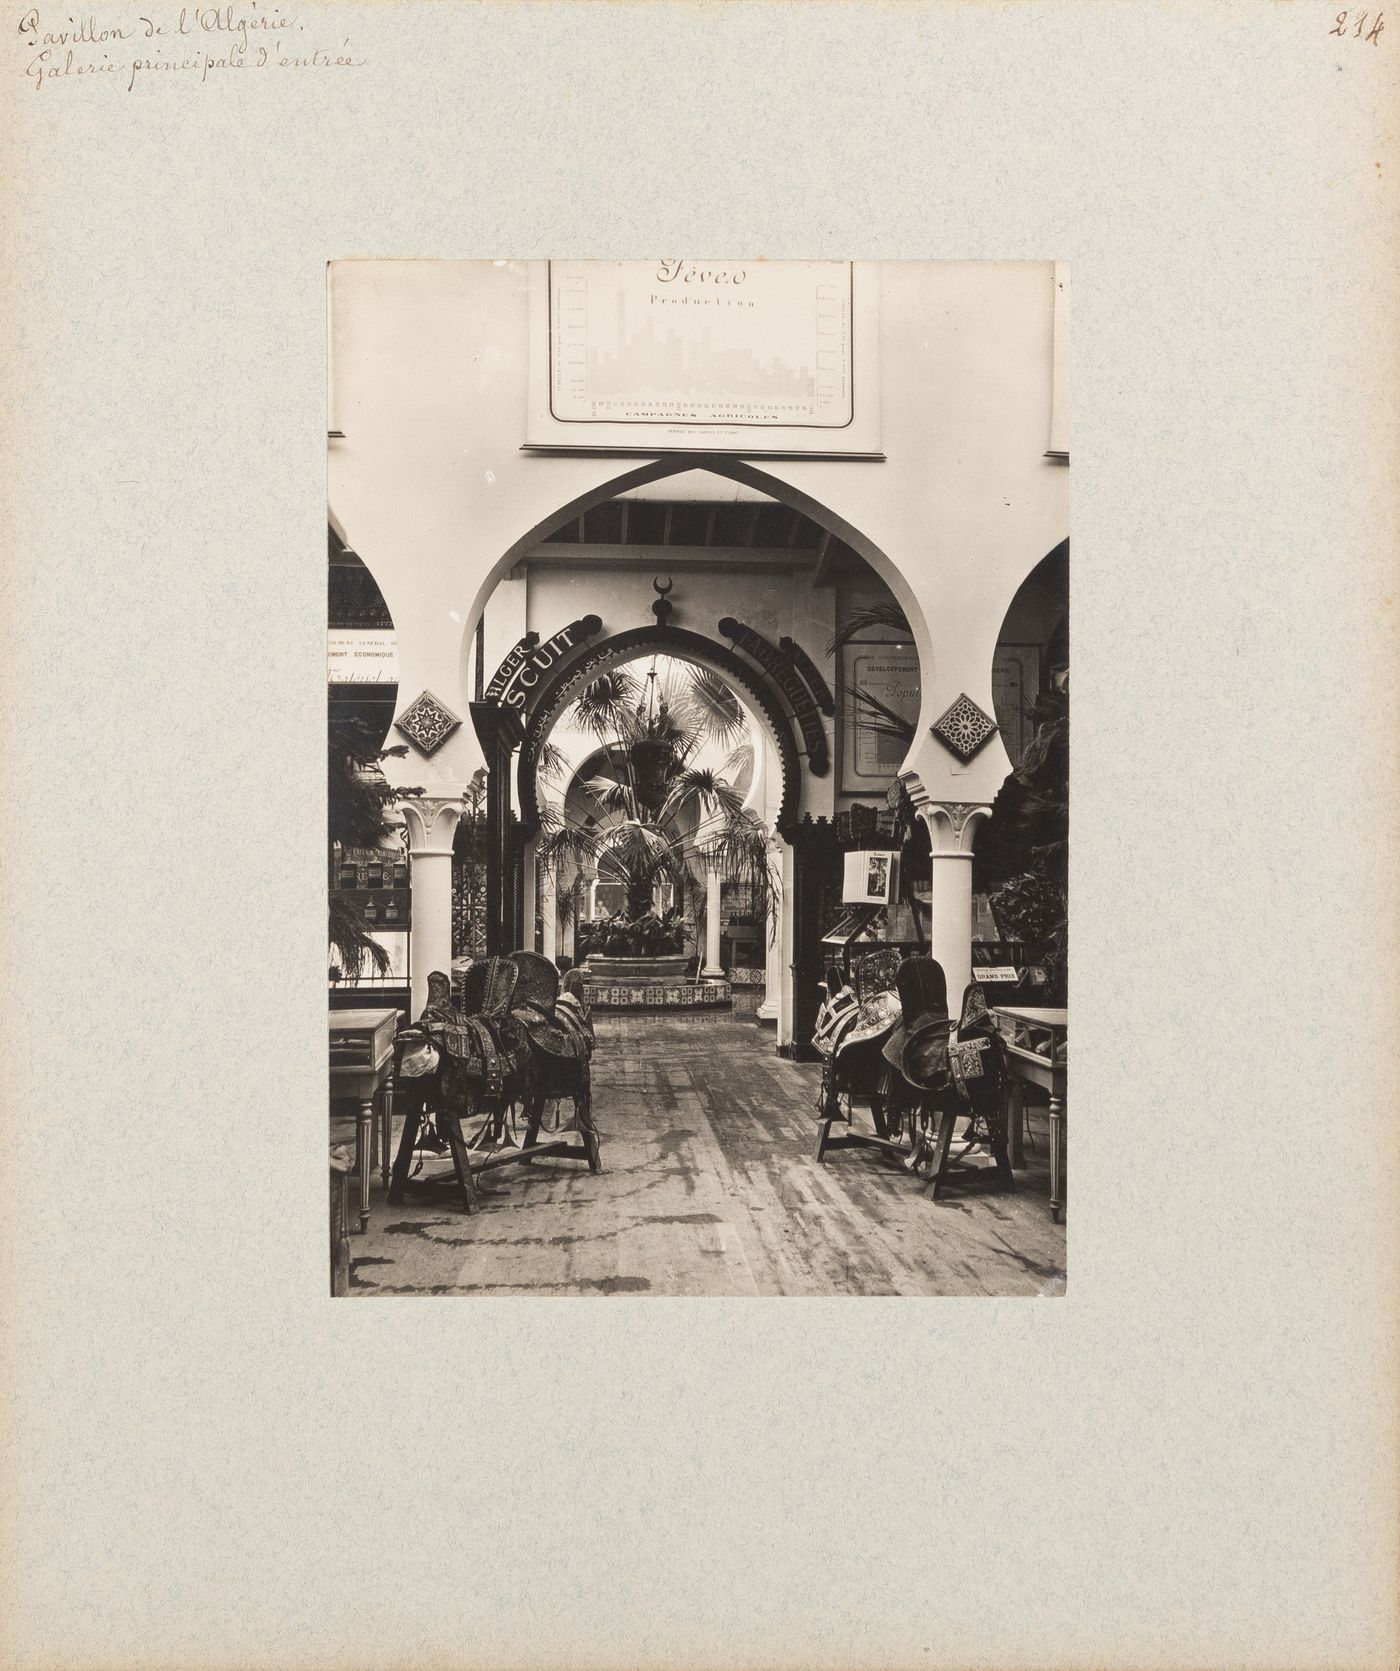 View of interior, Pavillon de l'Algérie, Exposition universelle, 1900, Paris, France